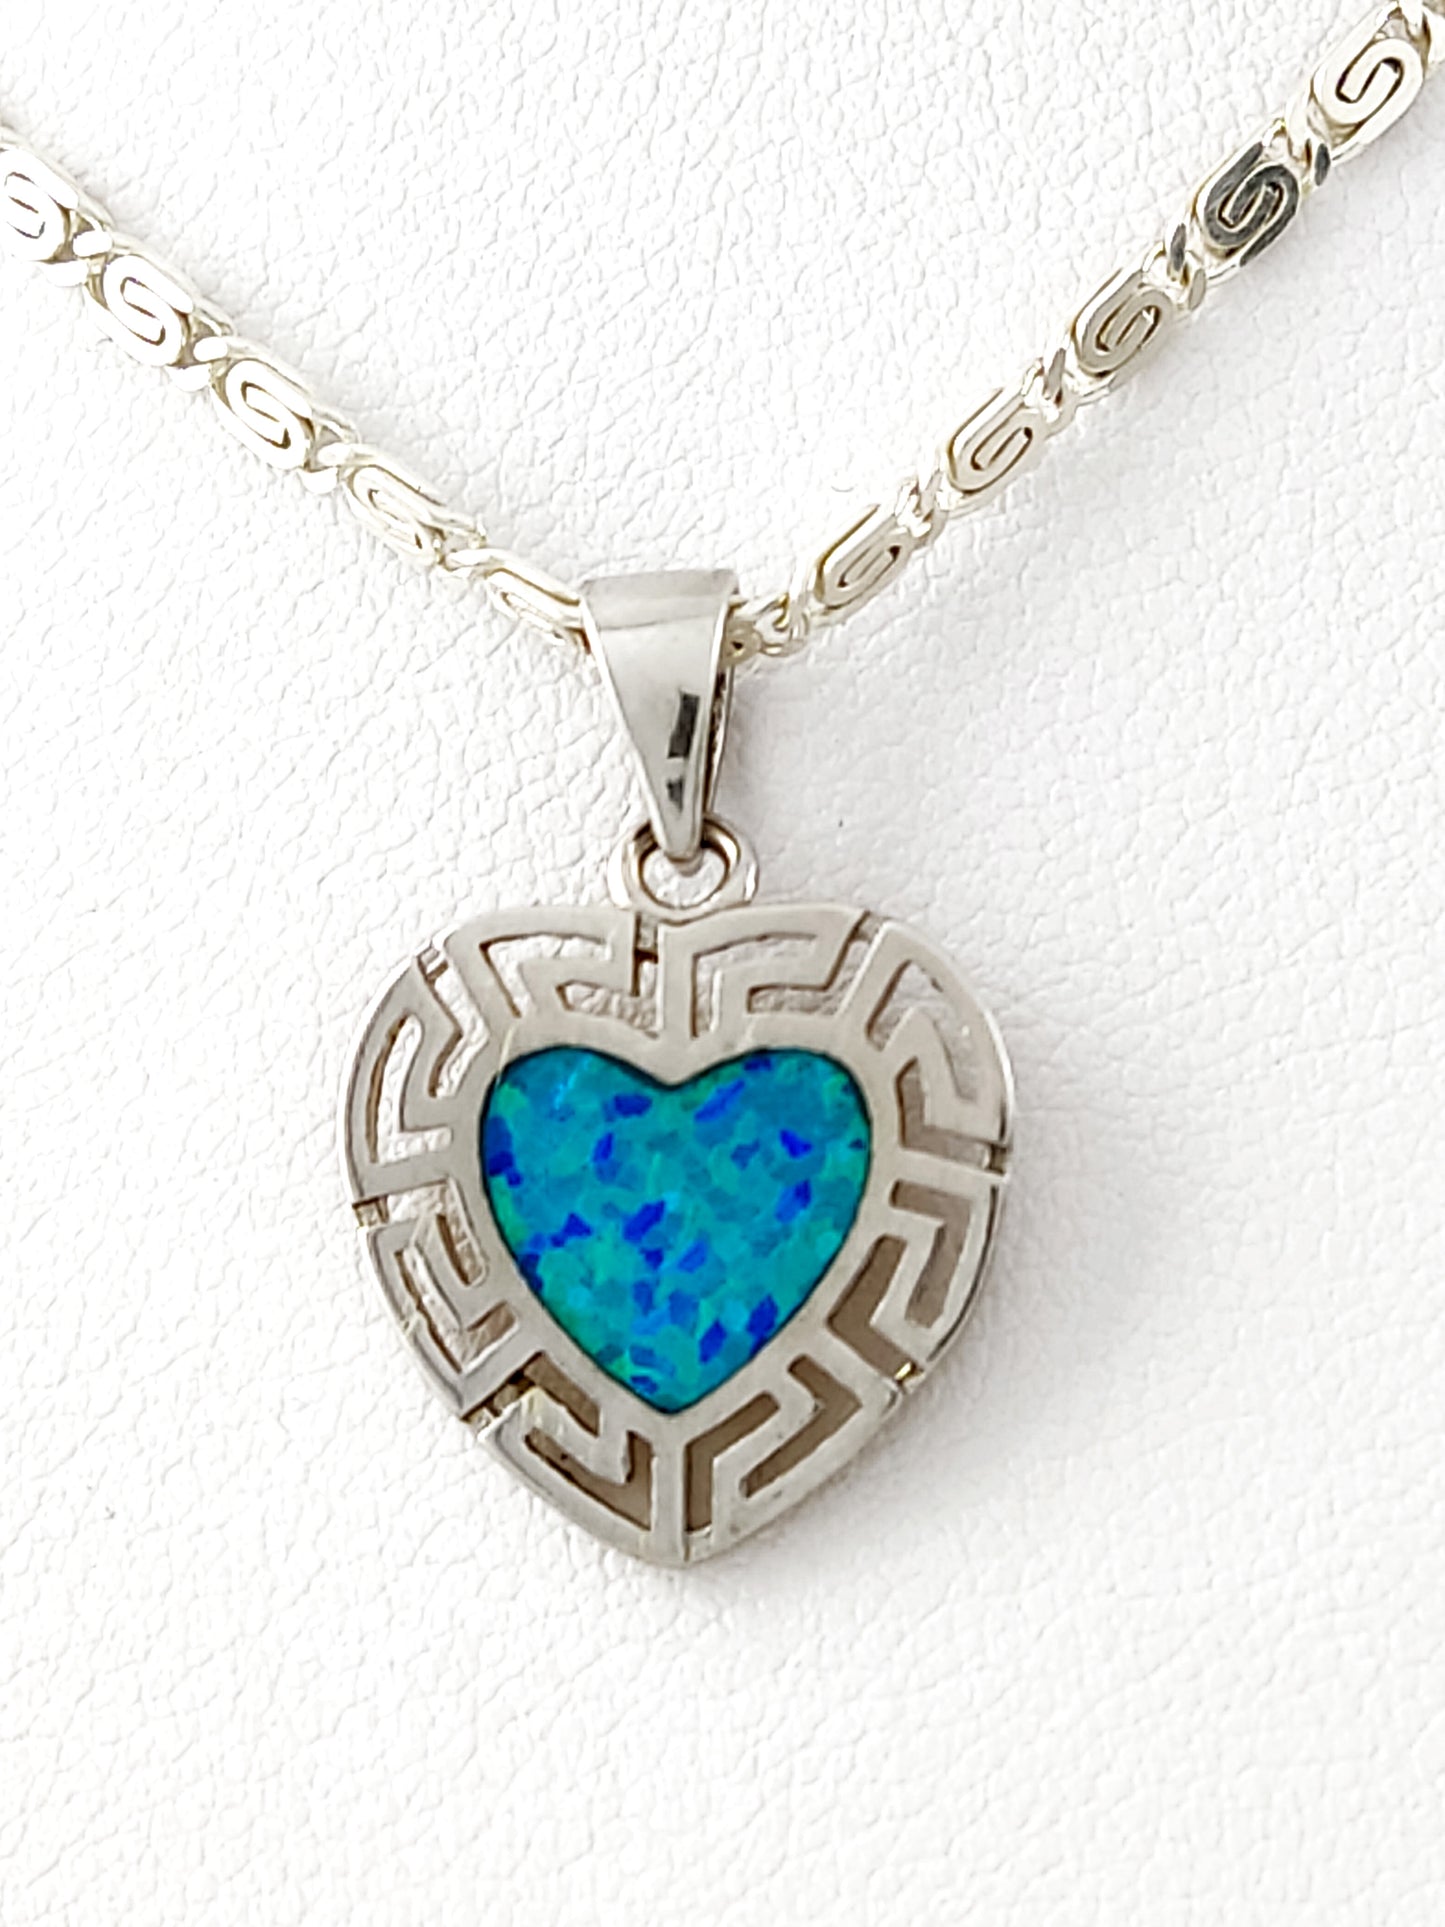 Collier avec pendentif en forme de cœur en argent et opale bleue, clé grecque, 15 mm